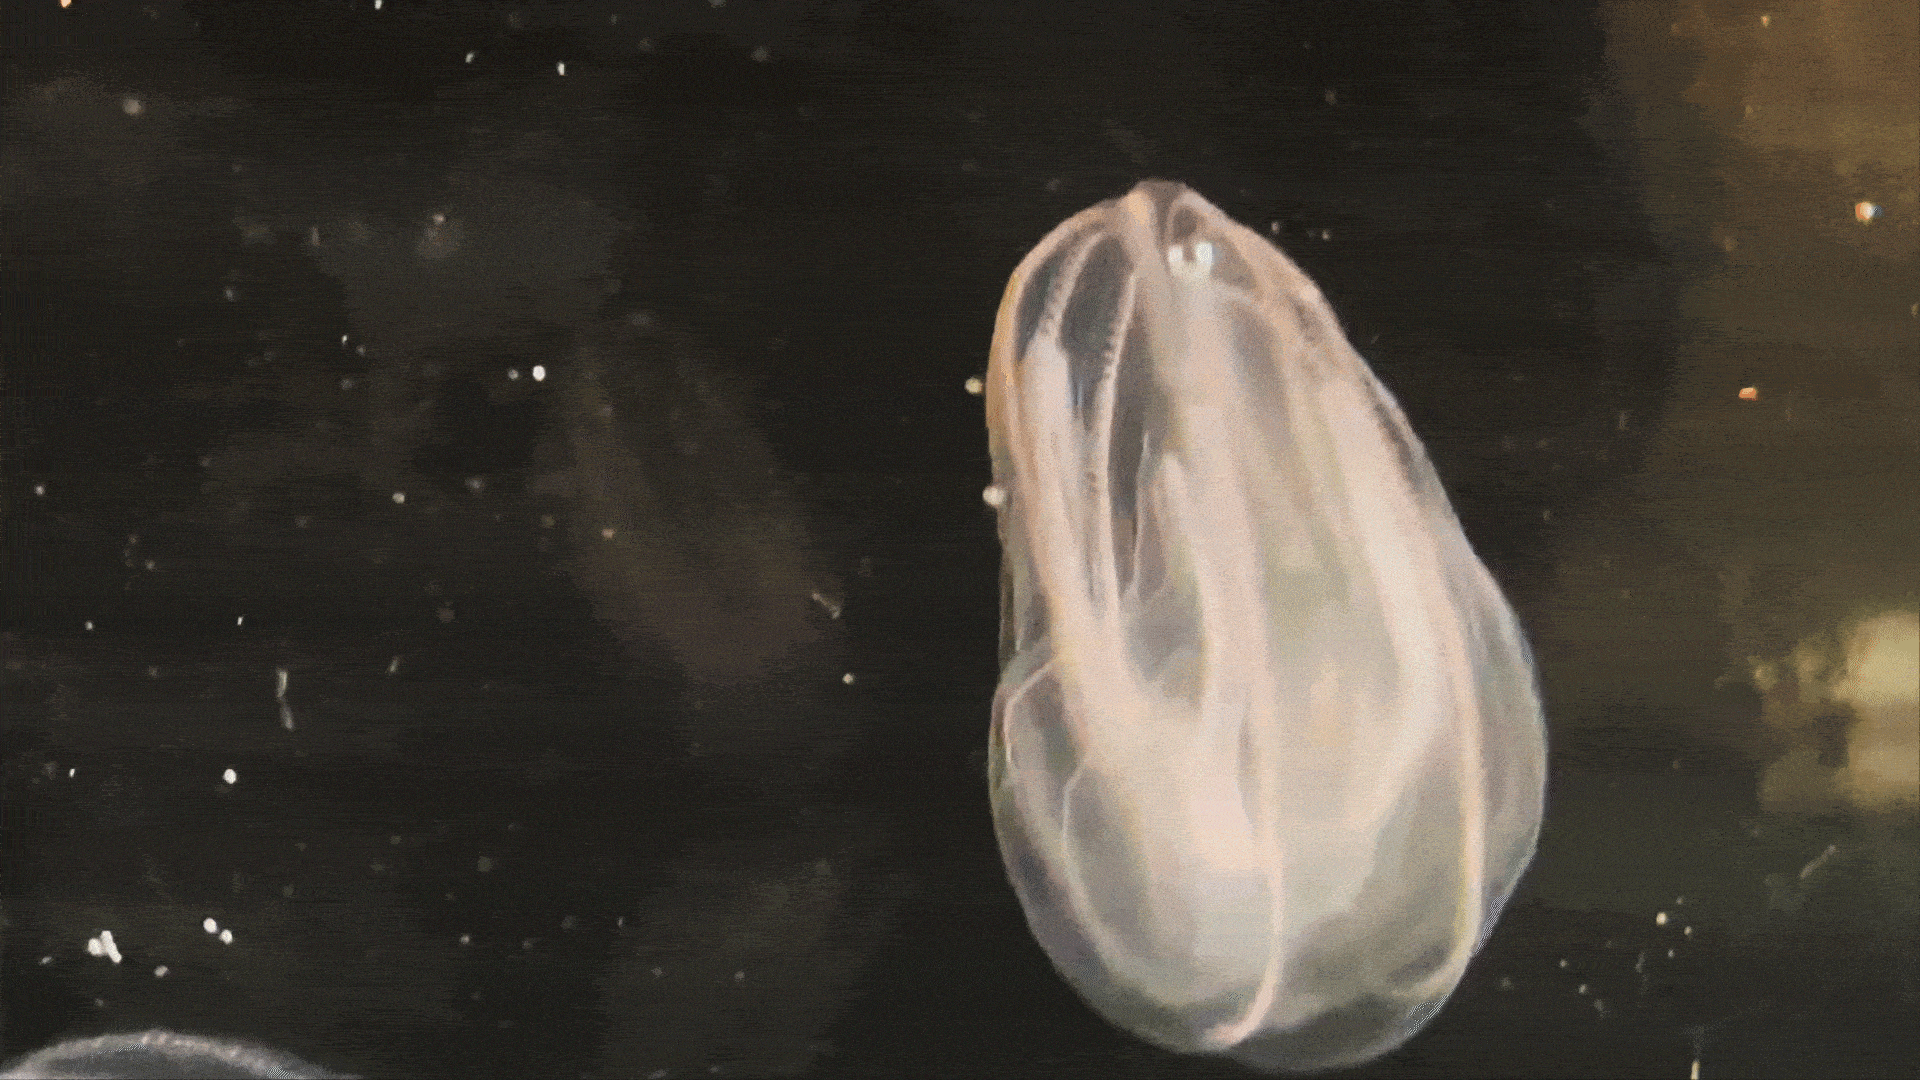 Fragile ctenophores float in seawater